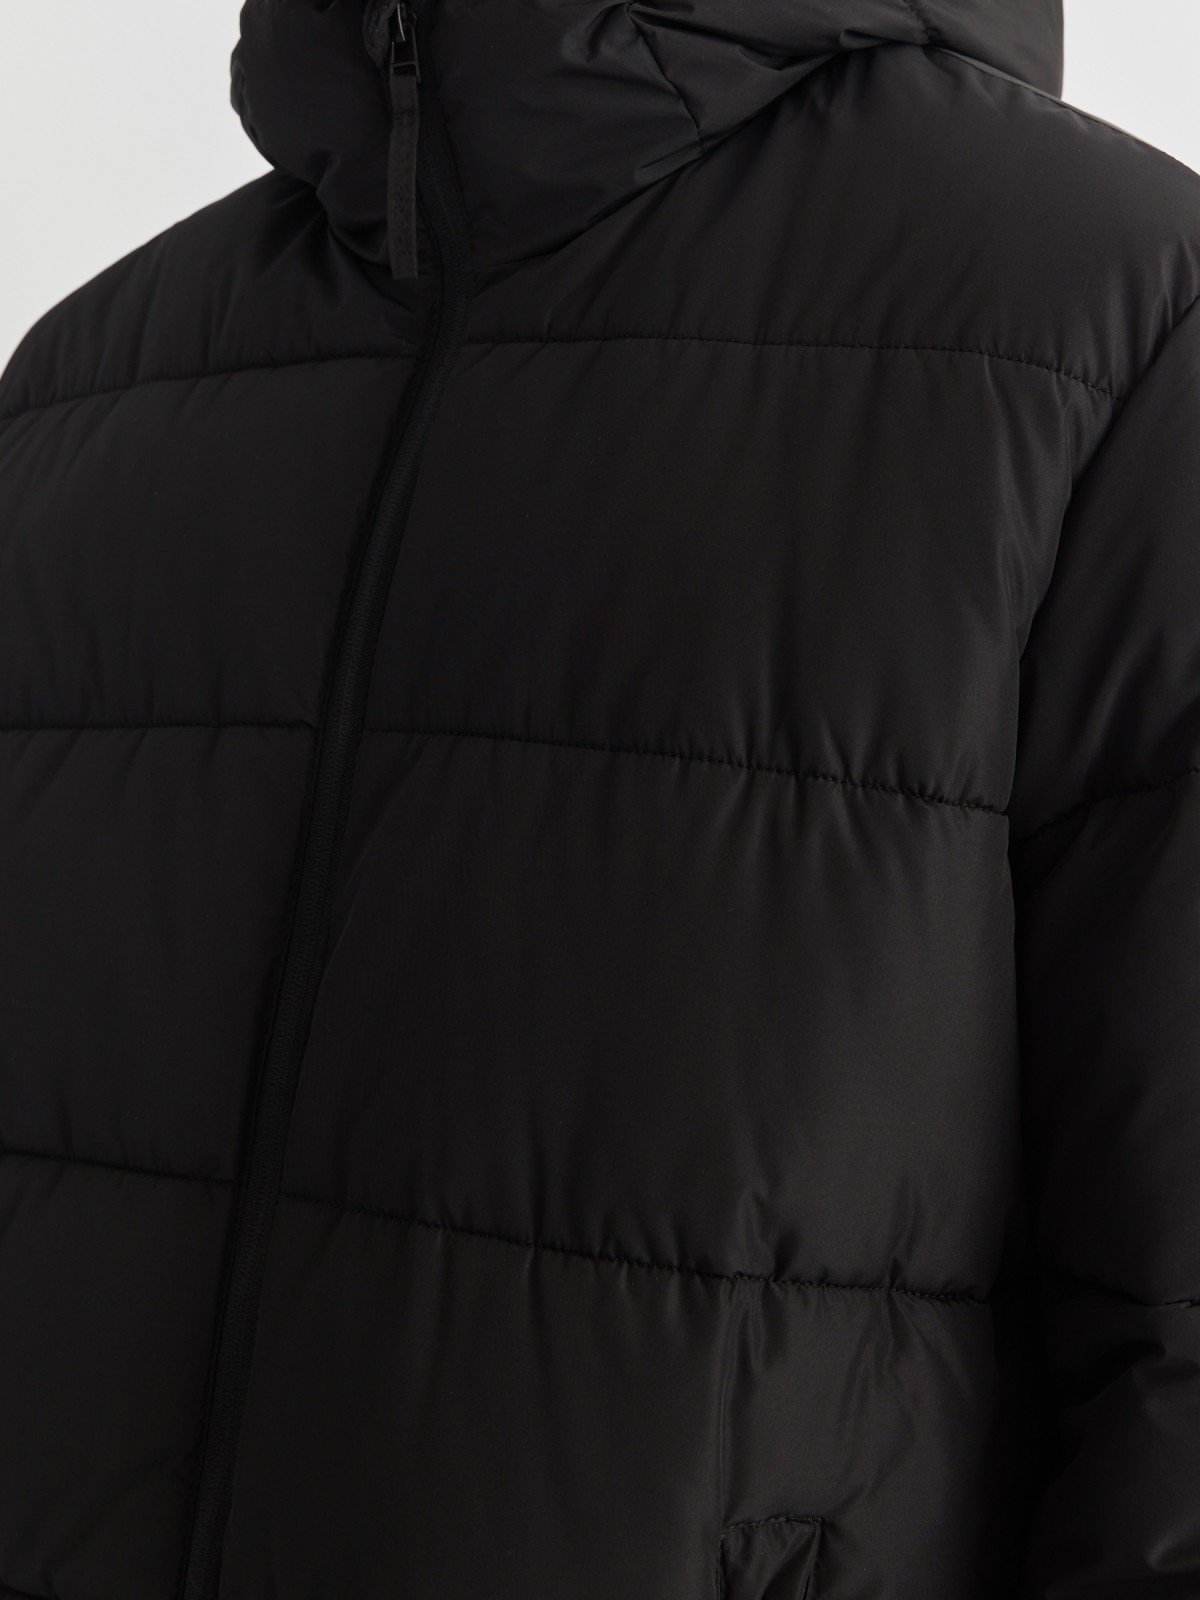 Тёплая стёганая куртка удлинённого силуэта с капюшоном zolla 01342522J064, цвет черный, размер M - фото 6